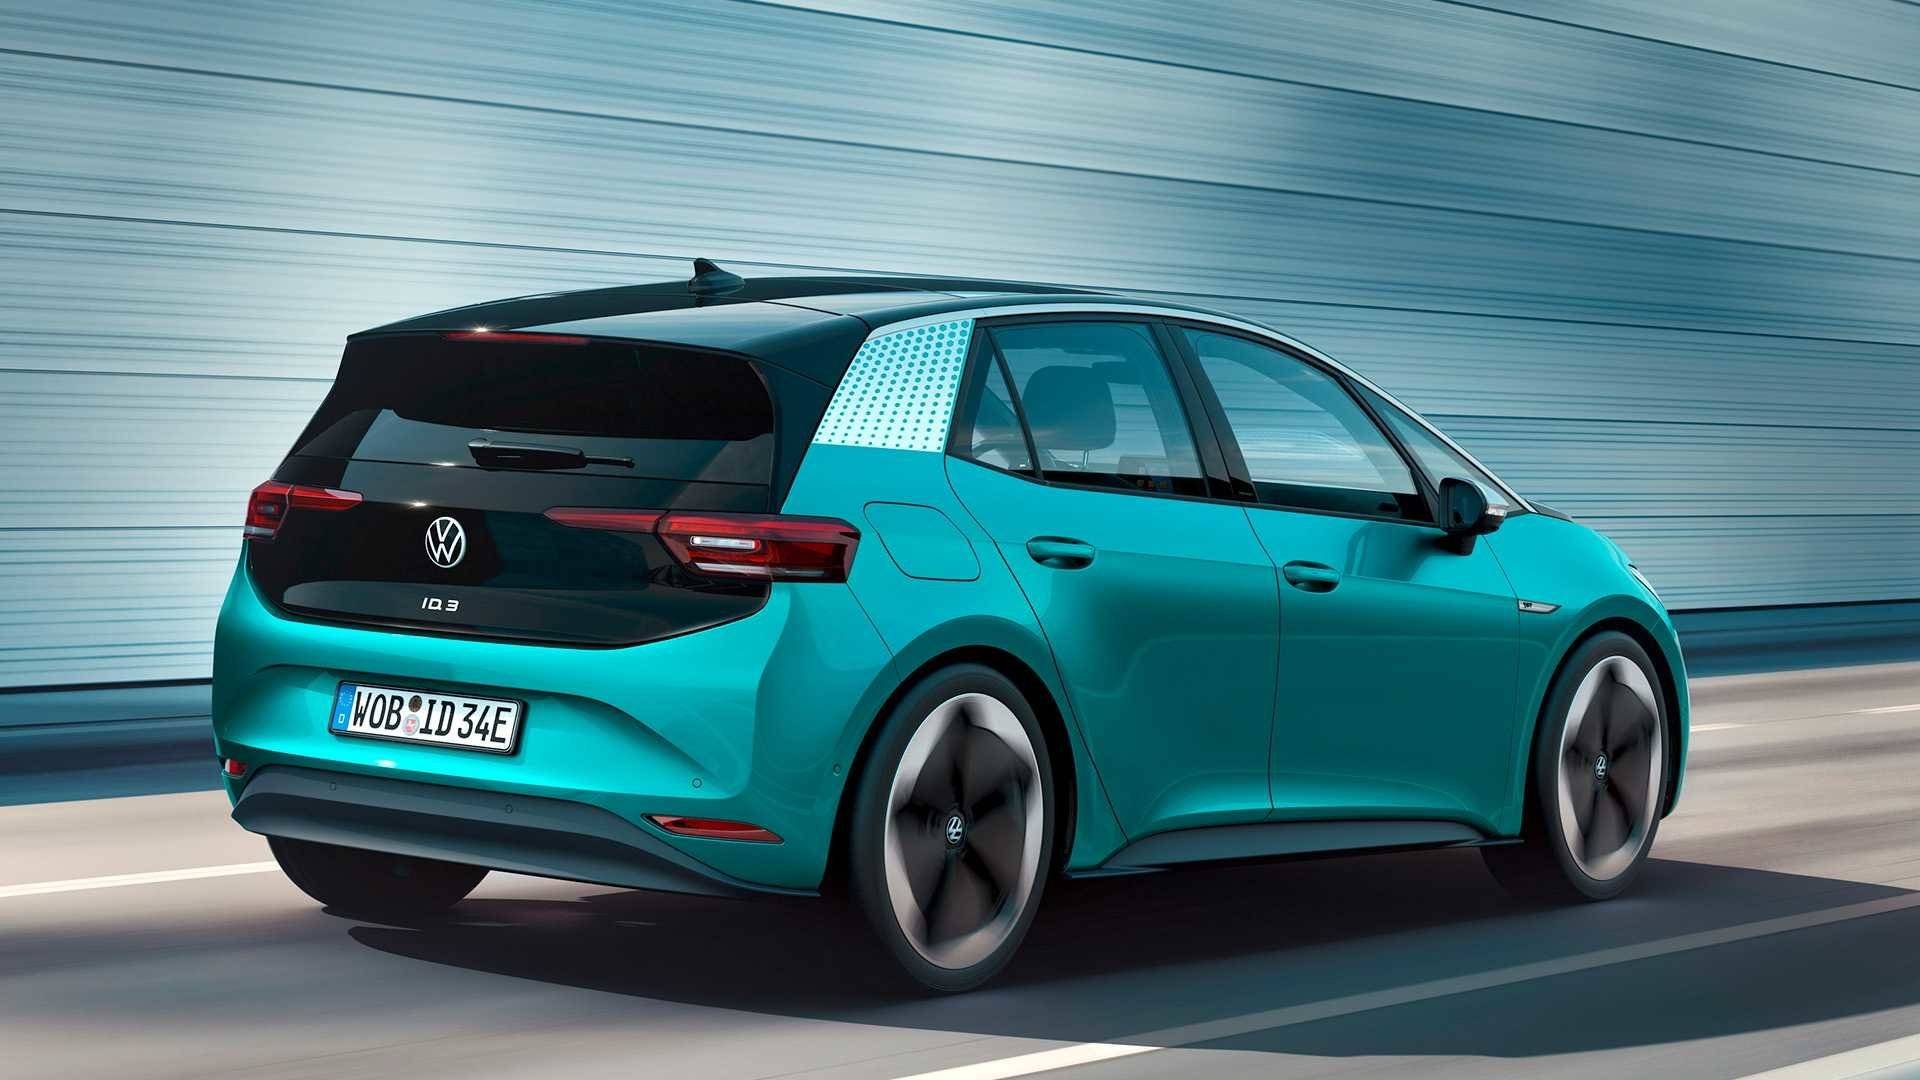 Volkswagen id 3 первый серийный хэтчбек компанииавтомобили на альтернативном топливе